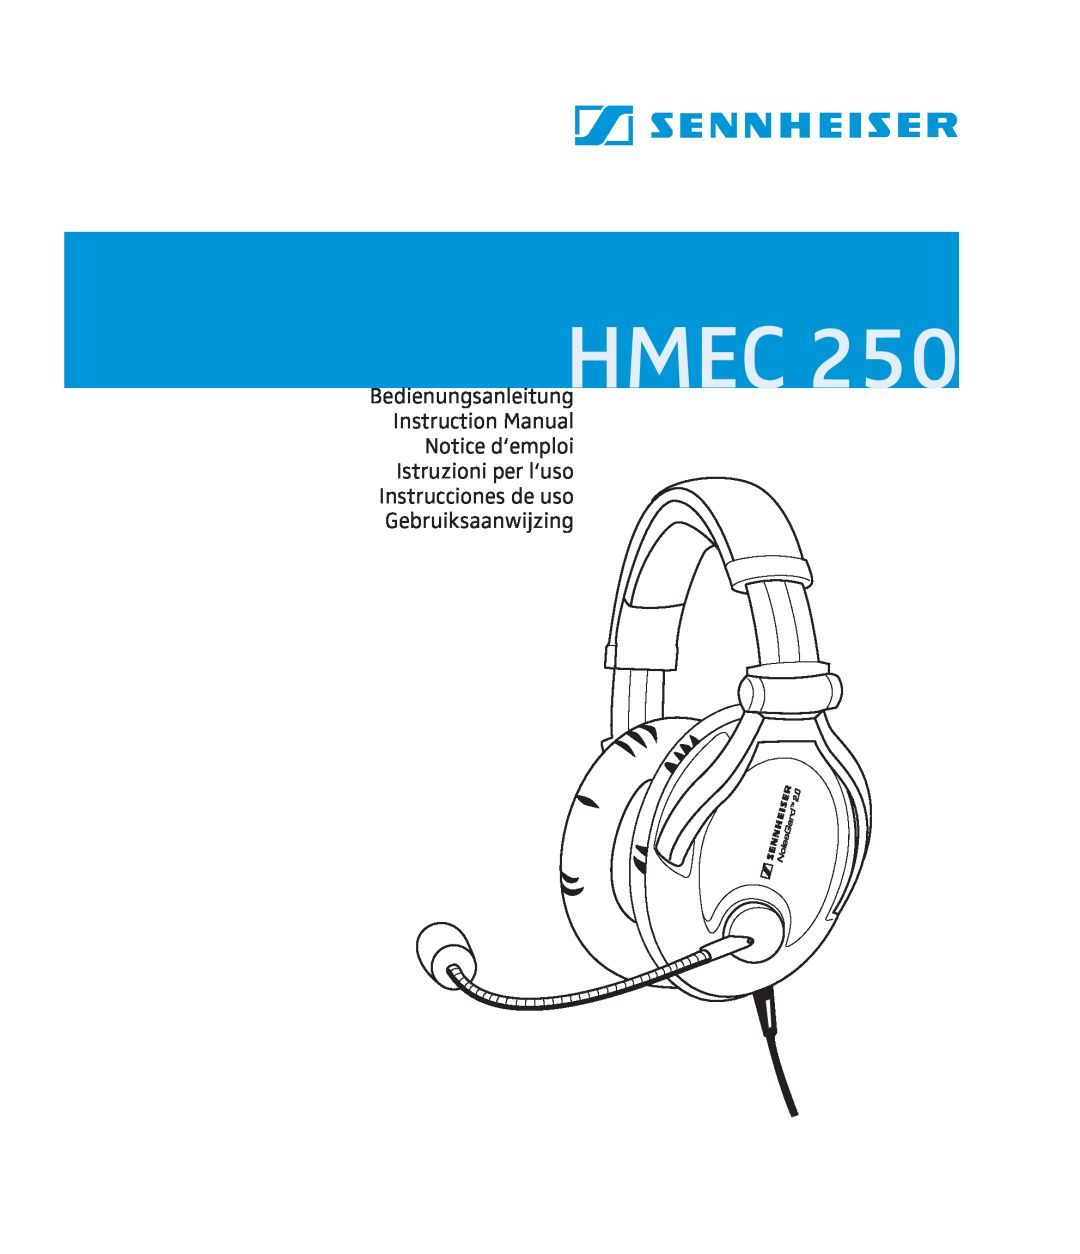 Sennheiser HMEC 250 instruction manual Hmec, Notice d‘emploi Istruzioni per l‘uso, Instrucciones de uso Gebruiksaanwijzing 